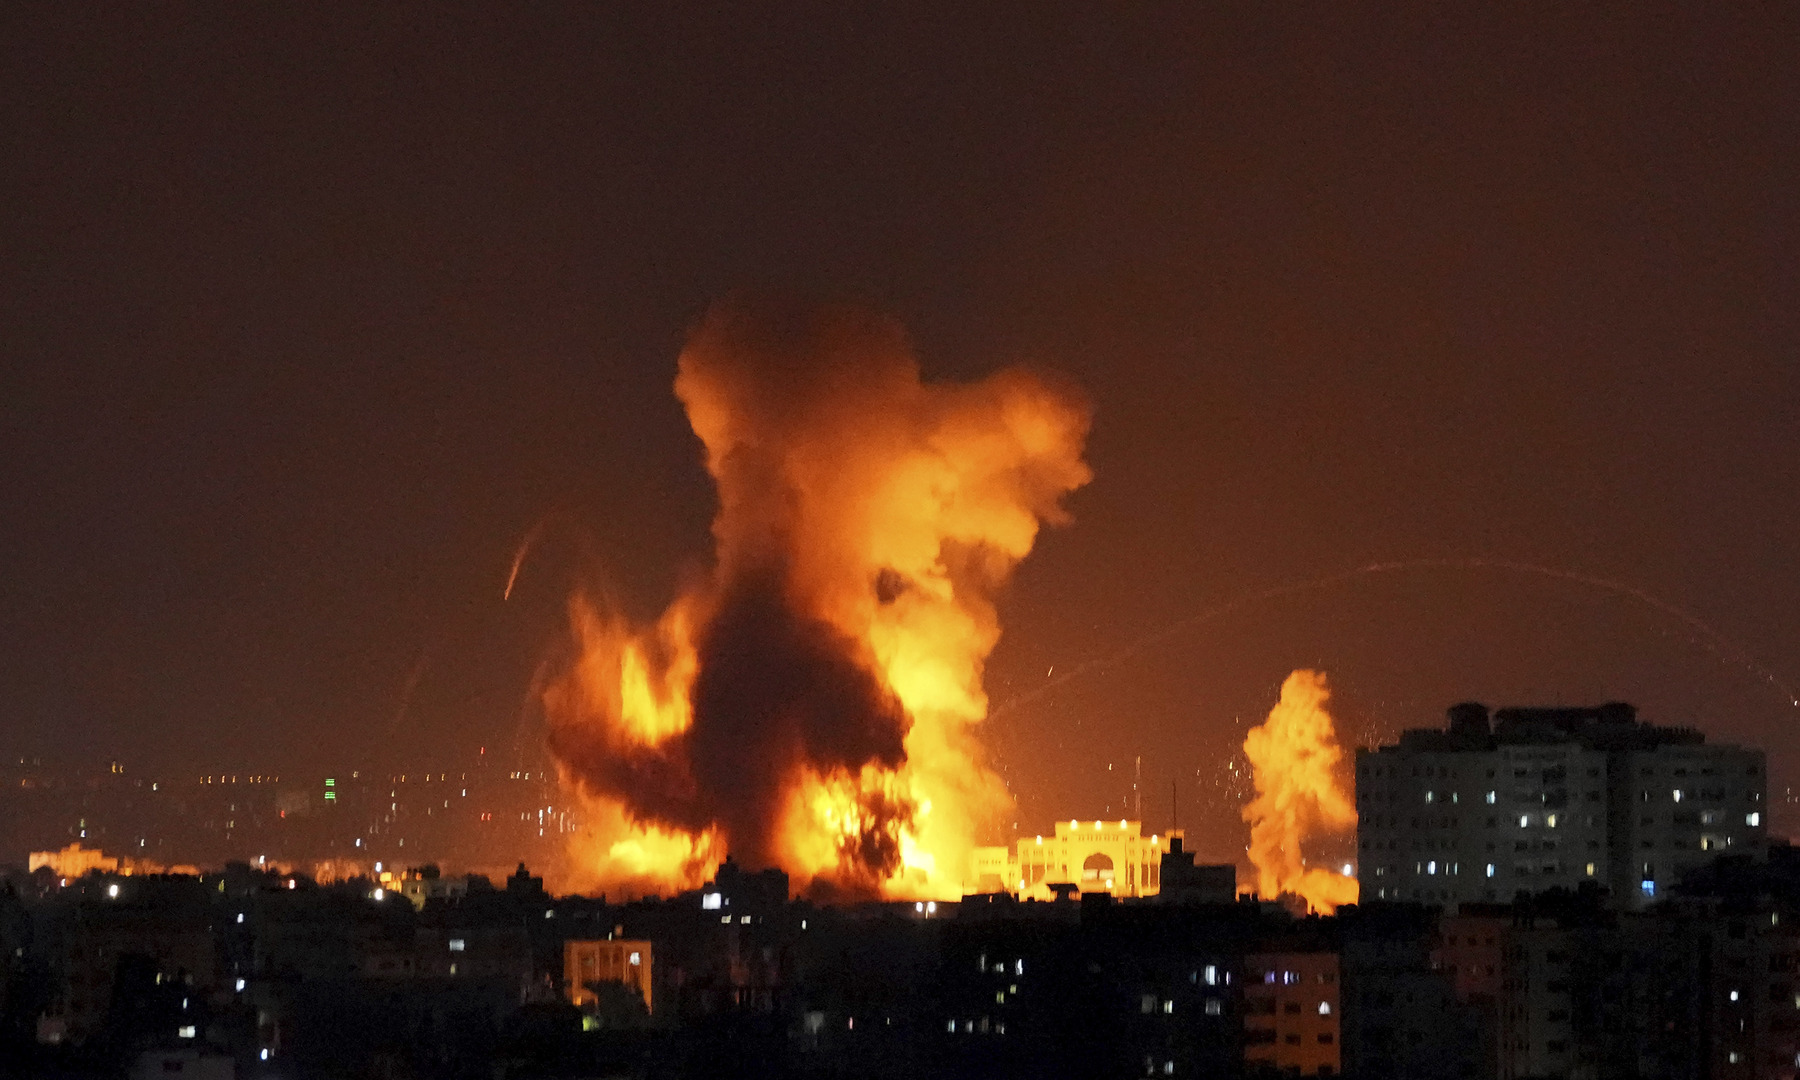 لابيد: إسرائيل ليست معنية بحملة عسكرية واسعة النطاق في غزة ولكنها لا تخشاها أيضا